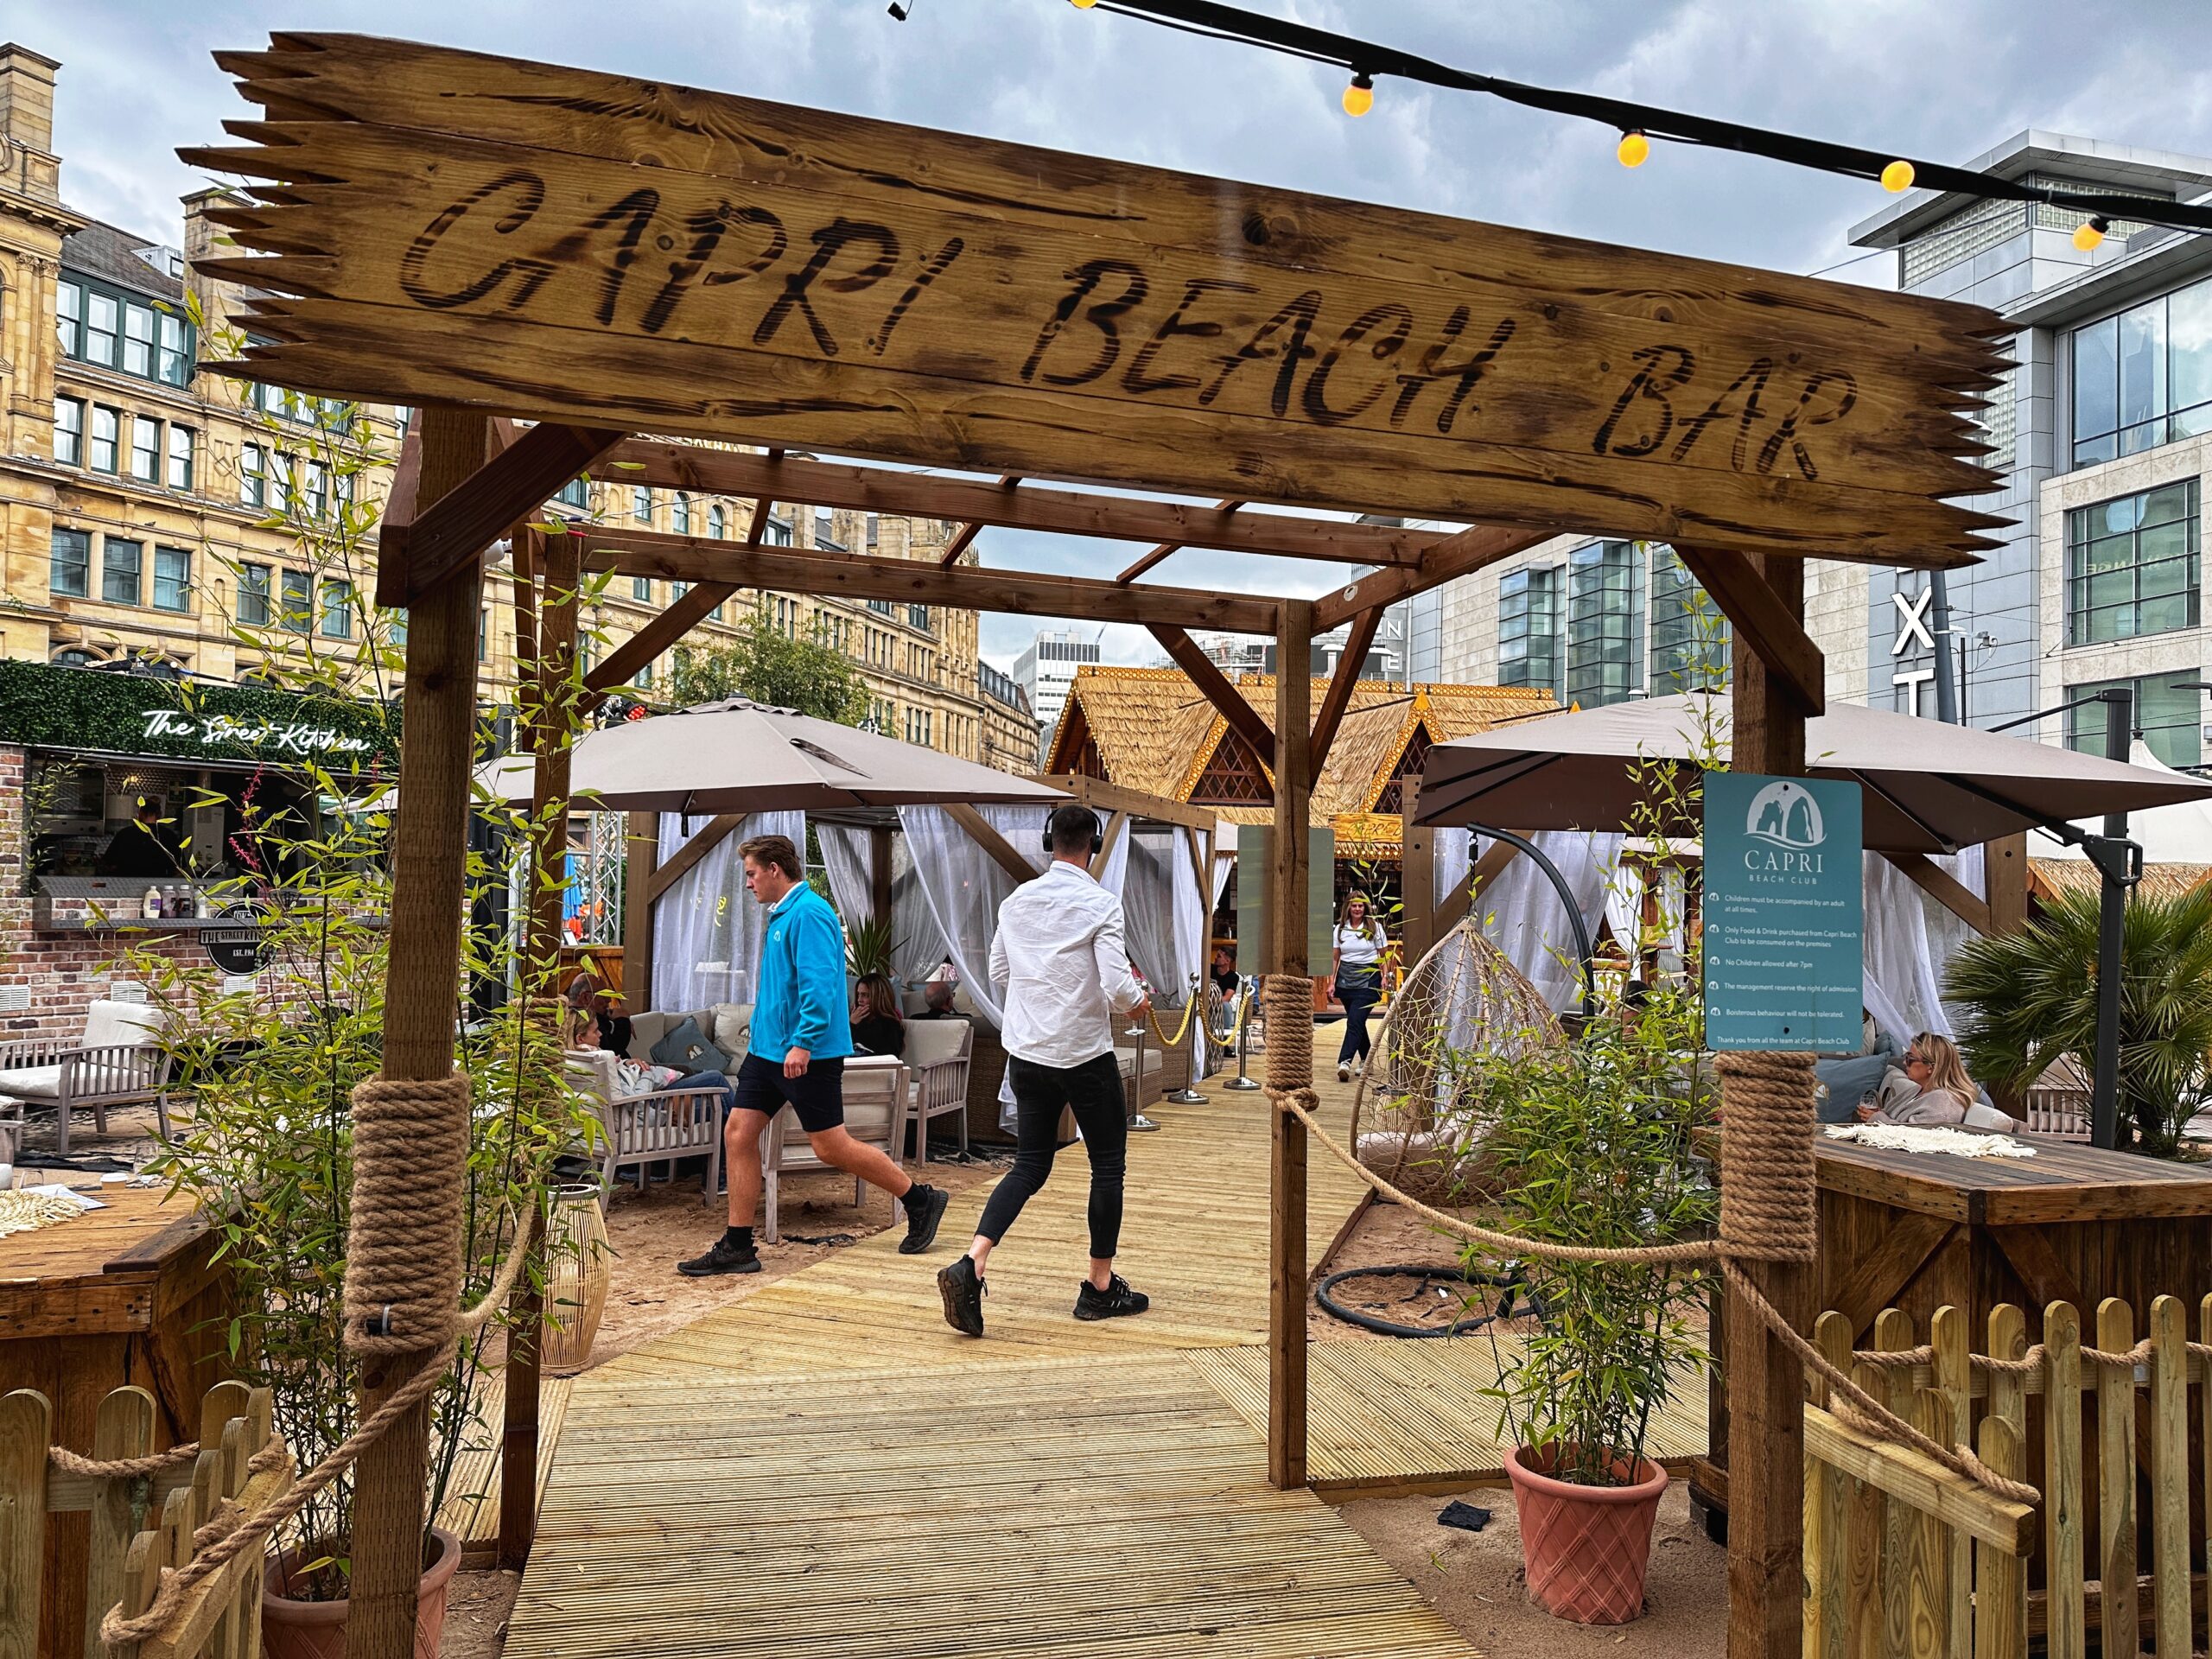 Capri Beach Club in Manchester